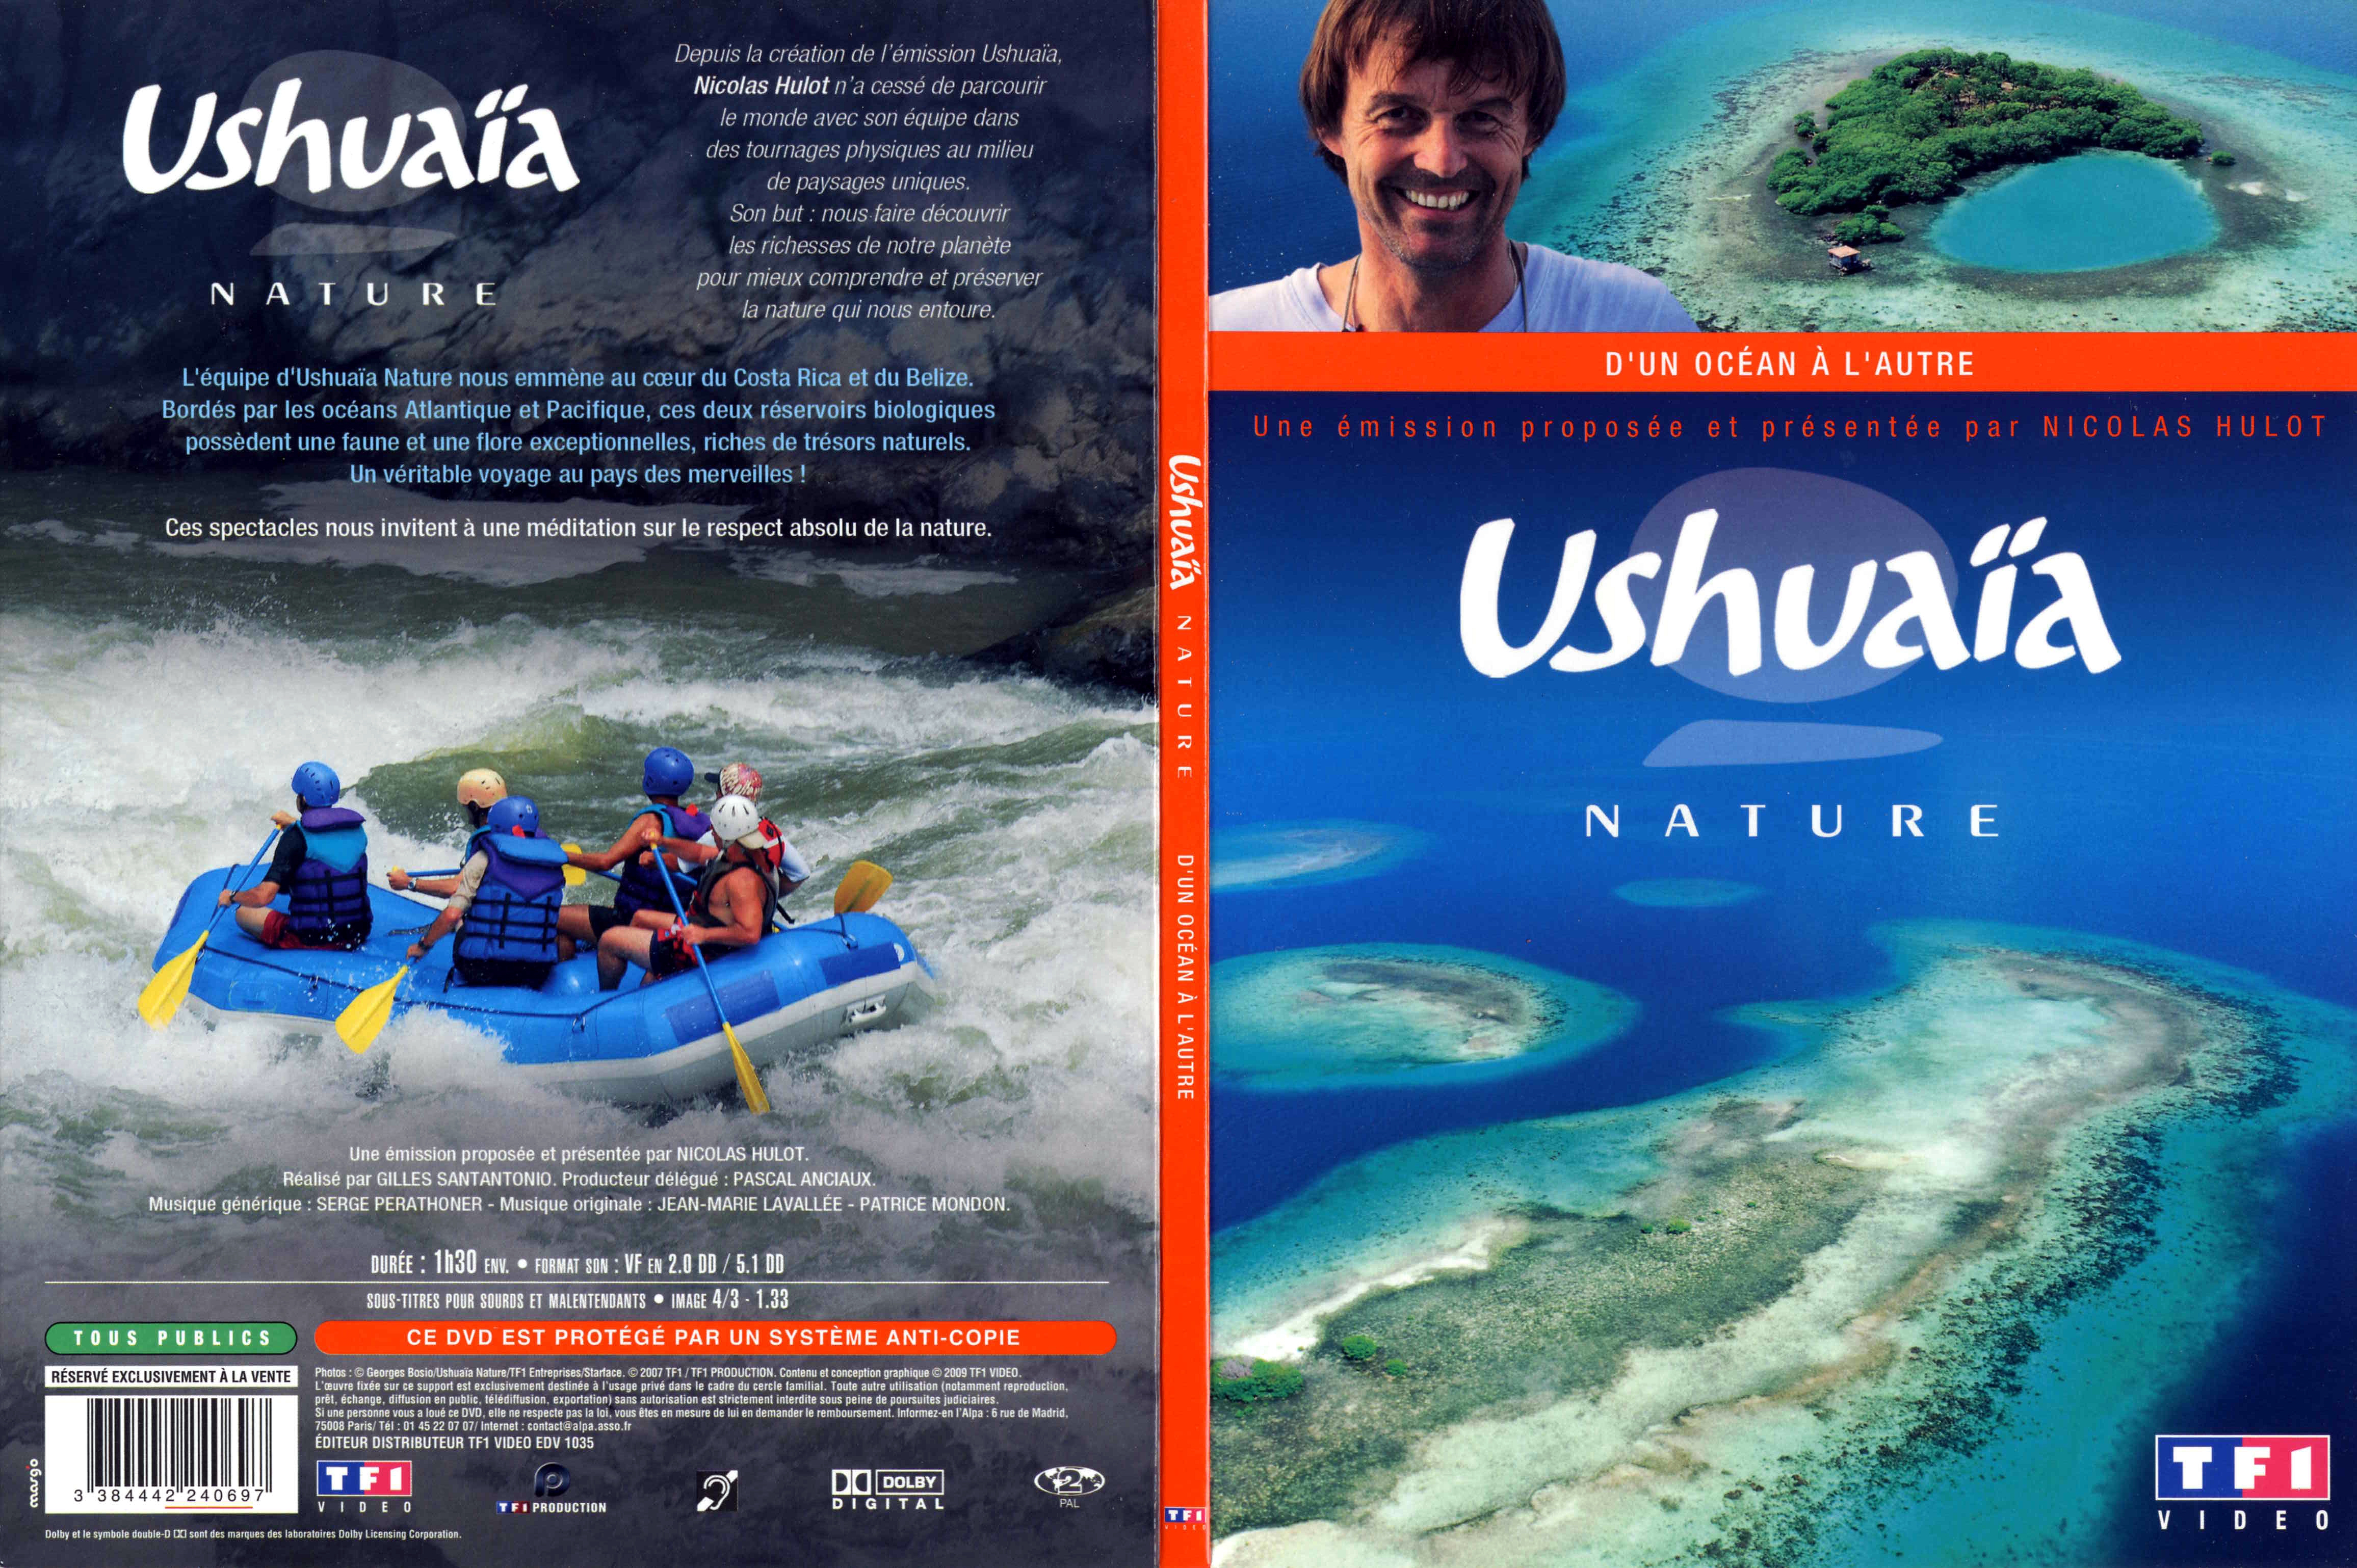 Jaquette DVD Ushuaia Nature - D